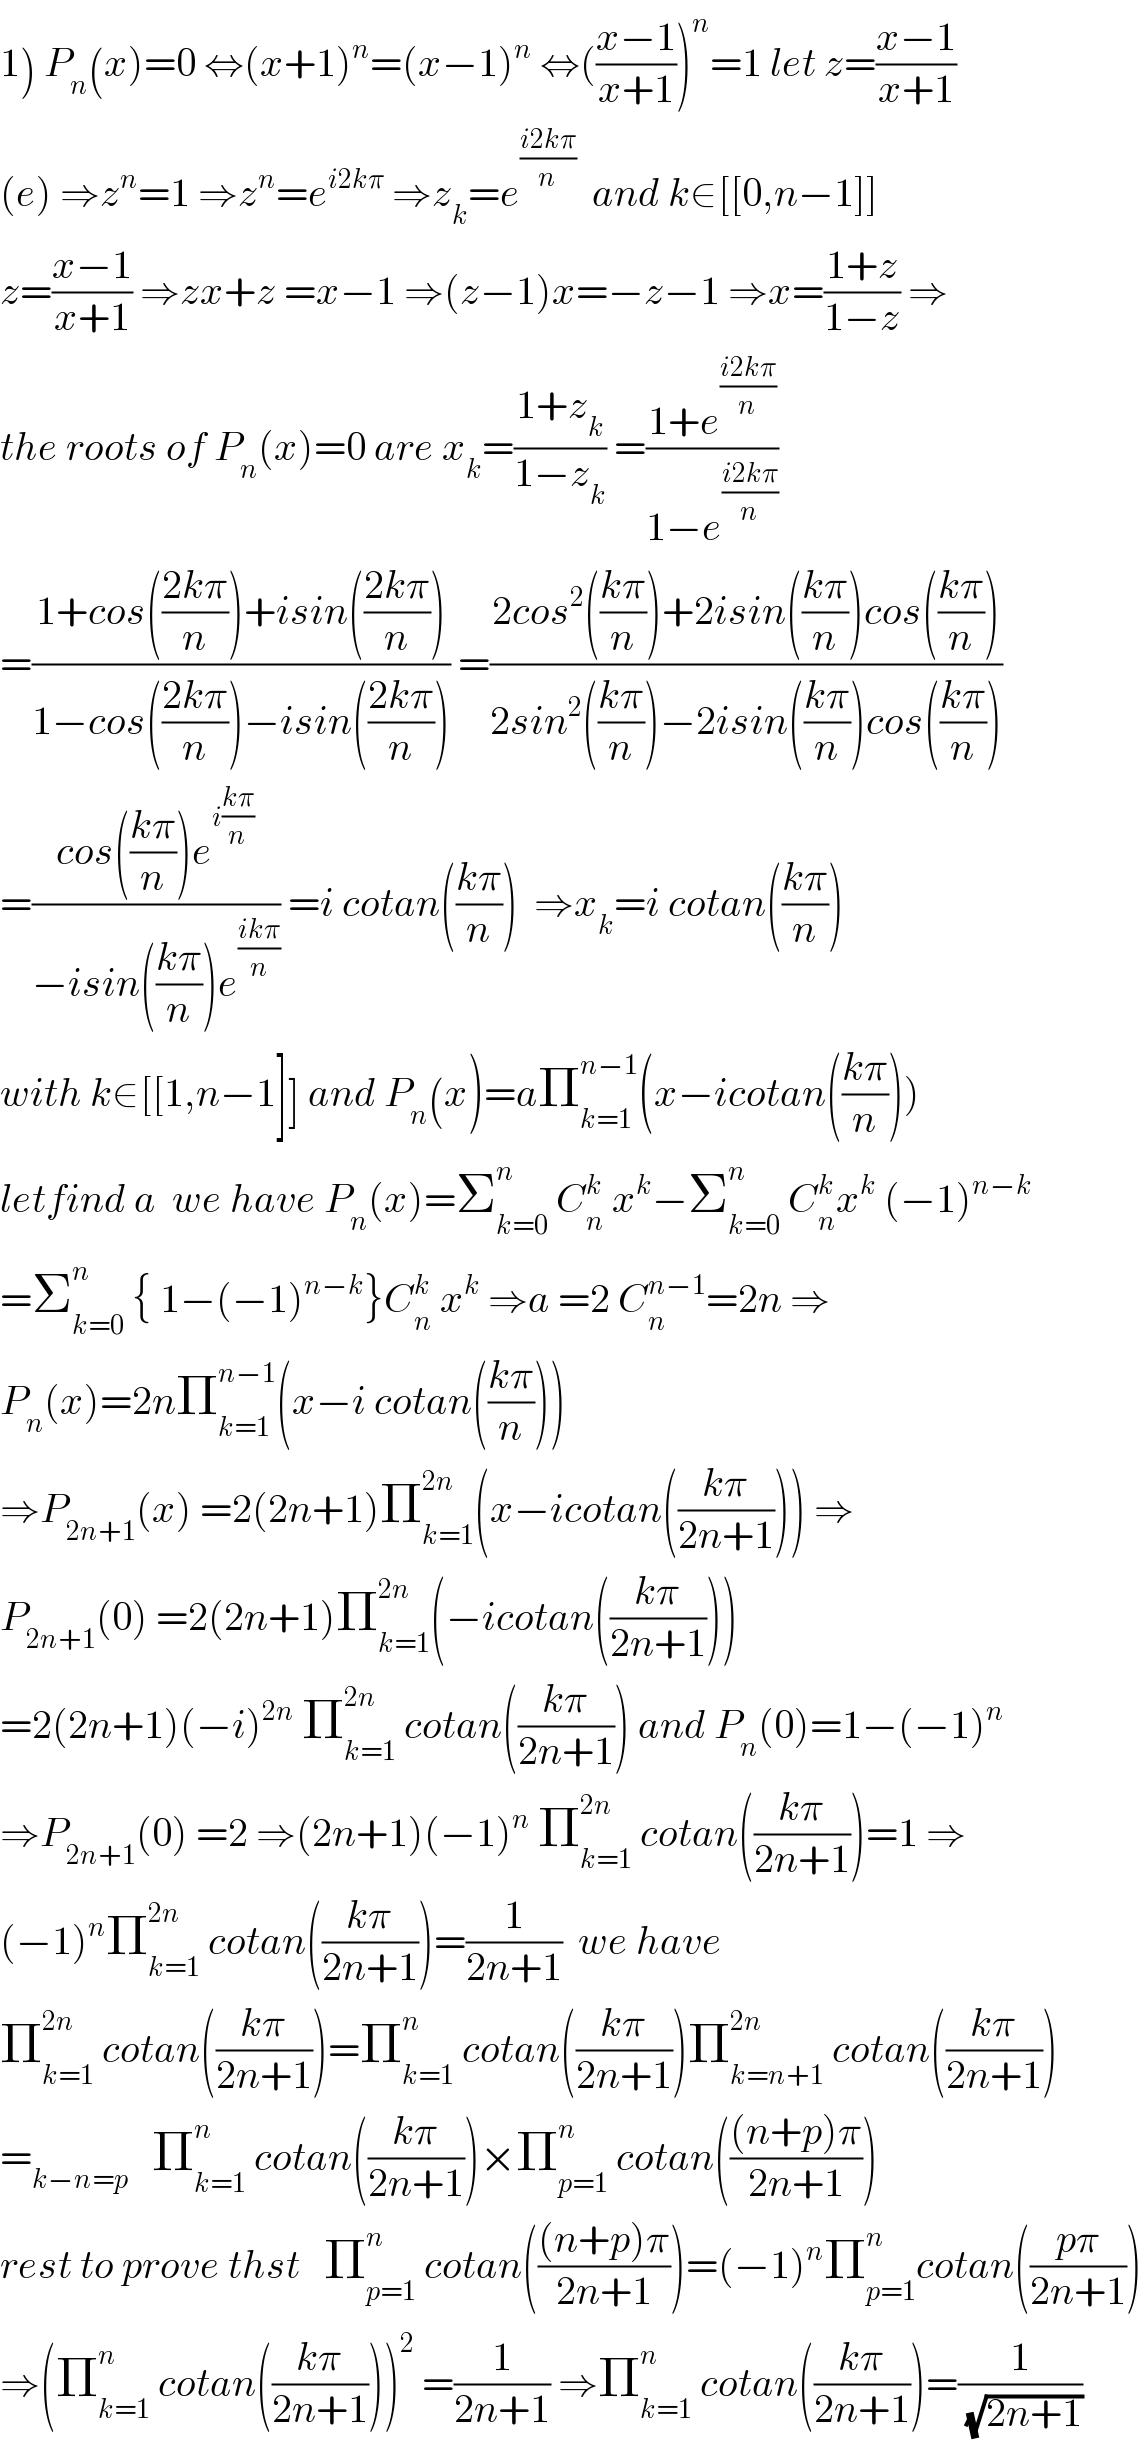 1) P_n (x)=0 ⇔(x+1)^n =(x−1)^n  ⇔(((x−1)/(x+1)))^n =1 let z=((x−1)/(x+1))  (e) ⇒z^n =1 ⇒z^n =e^(i2kπ)  ⇒z_k =e^((i2kπ)/n)   and k∈[[0,n−1]]  z=((x−1)/(x+1)) ⇒zx+z =x−1 ⇒(z−1)x=−z−1 ⇒x=((1+z)/(1−z)) ⇒  the roots of P_n (x)=0 are x_k =((1+z_k )/(1−z_k )) =((1+e^((i2kπ)/n) )/(1−e^((i2kπ)/n) ))  =((1+cos(((2kπ)/n))+isin(((2kπ)/n)))/(1−cos(((2kπ)/n))−isin(((2kπ)/n)))) =((2cos^2 (((kπ)/n))+2isin(((kπ)/n))cos(((kπ)/n)))/(2sin^2 (((kπ)/n))−2isin(((kπ)/n))cos(((kπ)/n))))  =((cos(((kπ)/n))e^(i((kπ)/n)) )/(−isin(((kπ)/n))e^((ikπ)/n) )) =i cotan(((kπ)/n))  ⇒x_k =i cotan(((kπ)/n))  with k∈[[1,n−1]] and P_n (x)=aΠ_(k=1) ^(n−1) (x−icotan(((kπ)/n)))  letfind a  we have P_n (x)=Σ_(k=0) ^n  C_n ^k  x^k −Σ_(k=0) ^n  C_n ^k x^k  (−1)^(n−k)   =Σ_(k=0) ^n  { 1−(−1)^(n−k) }C_n ^k  x^k  ⇒a =2 C_n ^(n−1) =2n ⇒  P_n (x)=2nΠ_(k=1) ^(n−1) (x−i cotan(((kπ)/n)))  ⇒P_(2n+1) (x) =2(2n+1)Π_(k=1) ^(2n) (x−icotan(((kπ)/(2n+1)))) ⇒  P_(2n+1) (0) =2(2n+1)Π_(k=1) ^(2n) (−icotan(((kπ)/(2n+1))))  =2(2n+1)(−i)^(2n)  Π_(k=1) ^(2n)  cotan(((kπ)/(2n+1))) and P_n (0)=1−(−1)^n   ⇒P_(2n+1) (0) =2 ⇒(2n+1)(−1)^n  Π_(k=1) ^(2n)  cotan(((kπ)/(2n+1)))=1 ⇒  (−1)^n Π_(k=1) ^(2n)  cotan(((kπ)/(2n+1)))=(1/(2n+1))  we have  Π_(k=1) ^(2n)  cotan(((kπ)/(2n+1)))=Π_(k=1) ^n  cotan(((kπ)/(2n+1)))Π_(k=n+1) ^(2n)  cotan(((kπ)/(2n+1)))  =_(k−n=p)    Π_(k=1) ^n  cotan(((kπ)/(2n+1)))×Π_(p=1) ^n  cotan((((n+p)π)/(2n+1)))  rest to prove thst   Π_(p=1) ^n  cotan((((n+p)π)/(2n+1)))=(−1)^n Π_(p=1) ^(n ) cotan(((pπ)/(2n+1)))  ⇒(Π_(k=1) ^n  cotan(((kπ)/(2n+1))))^2  =(1/(2n+1)) ⇒Π_(k=1) ^n  cotan(((kπ)/(2n+1)))=(1/(√(2n+1)))  